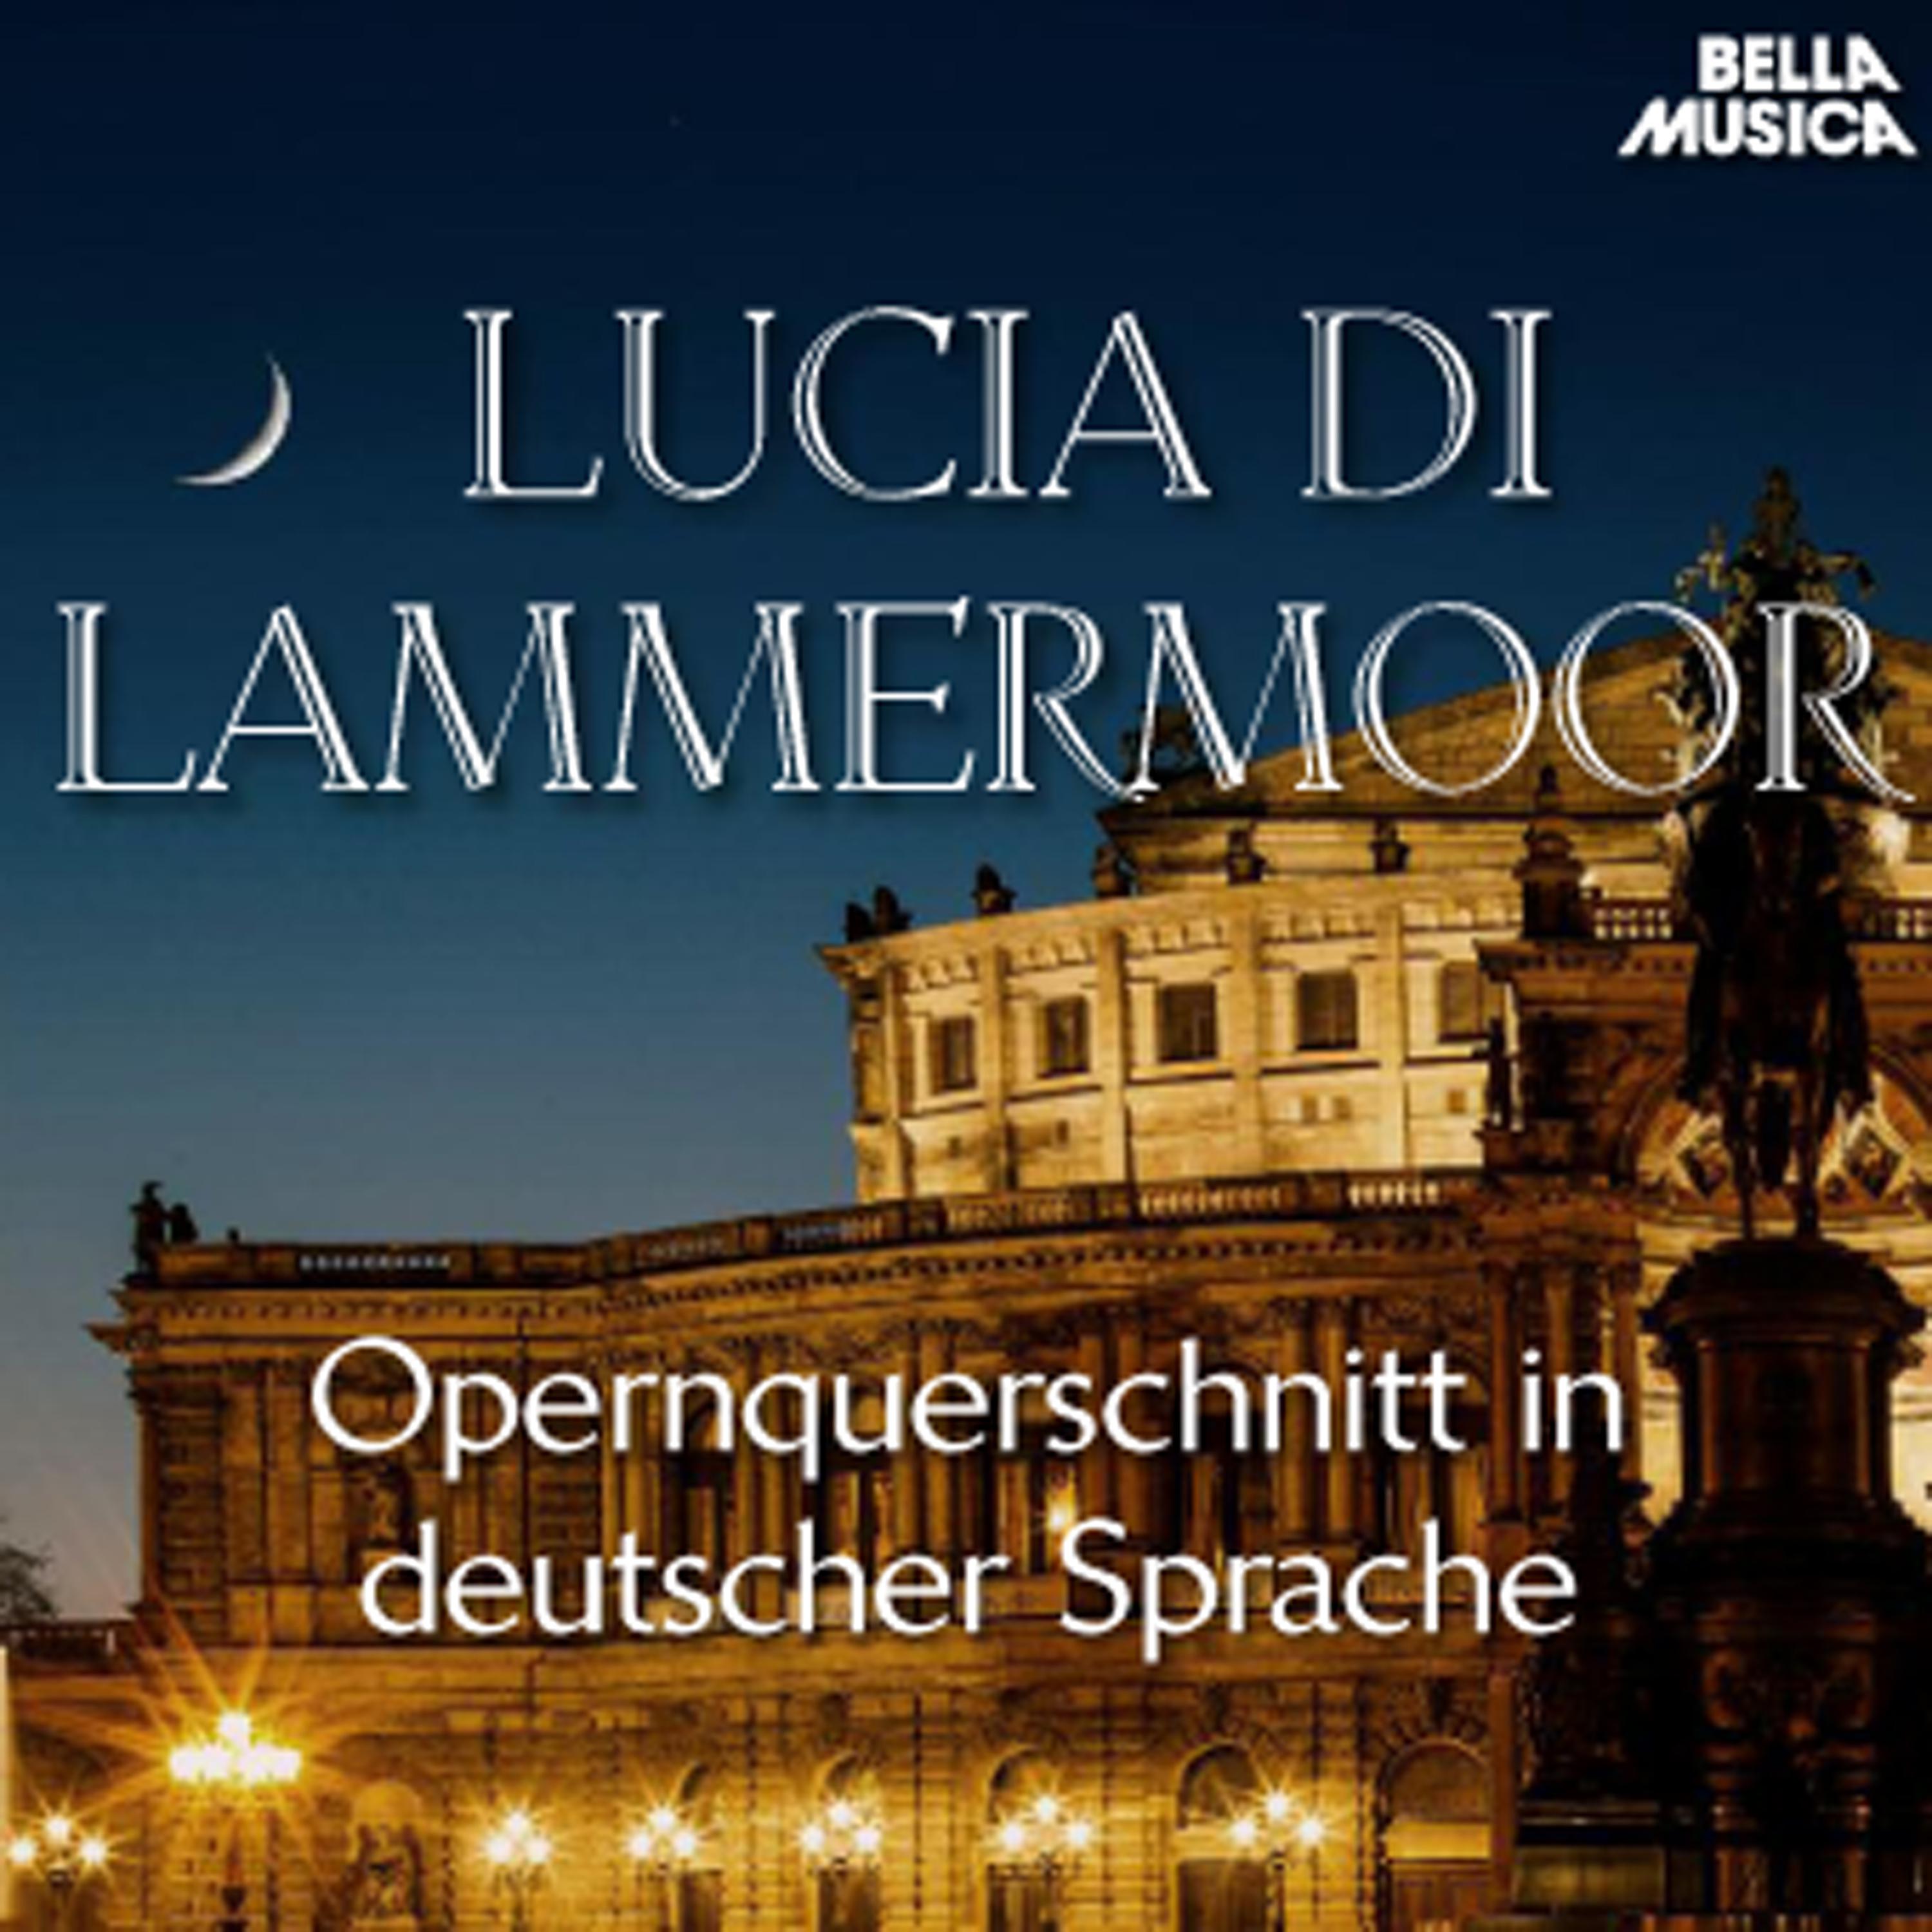 Lucia di Lammermoor: Auf des Grabes dü ster' m Hü gel  Schw rt als Gattin mir ewige Treue